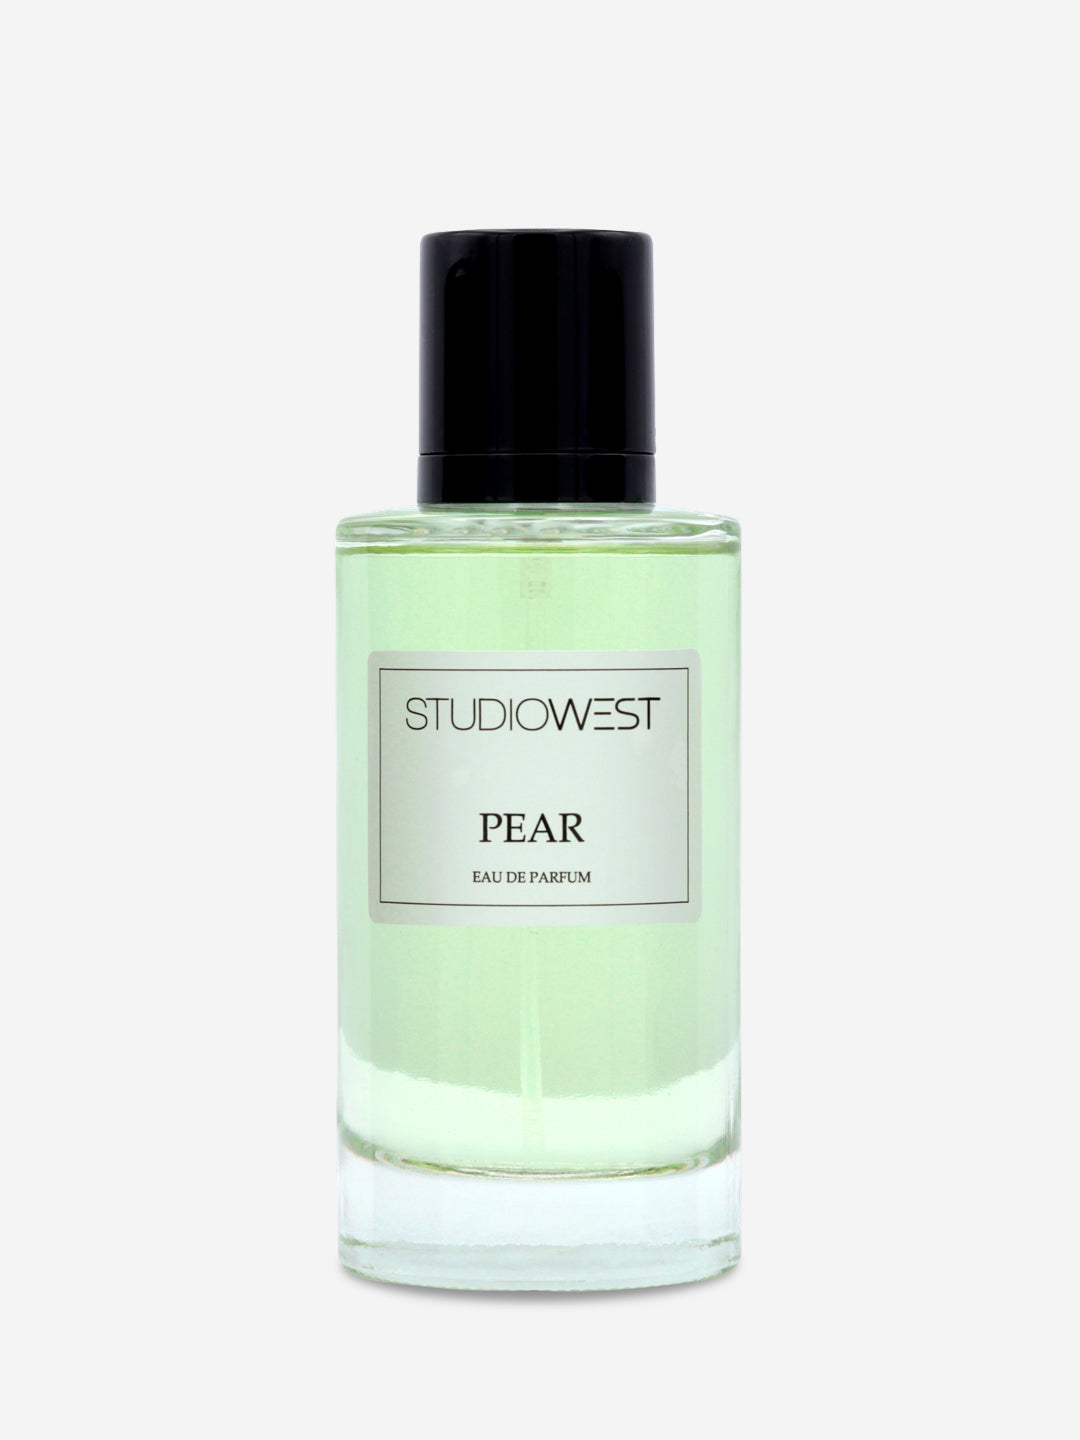 Studiowest Pear EAU DE Parfum 100ml